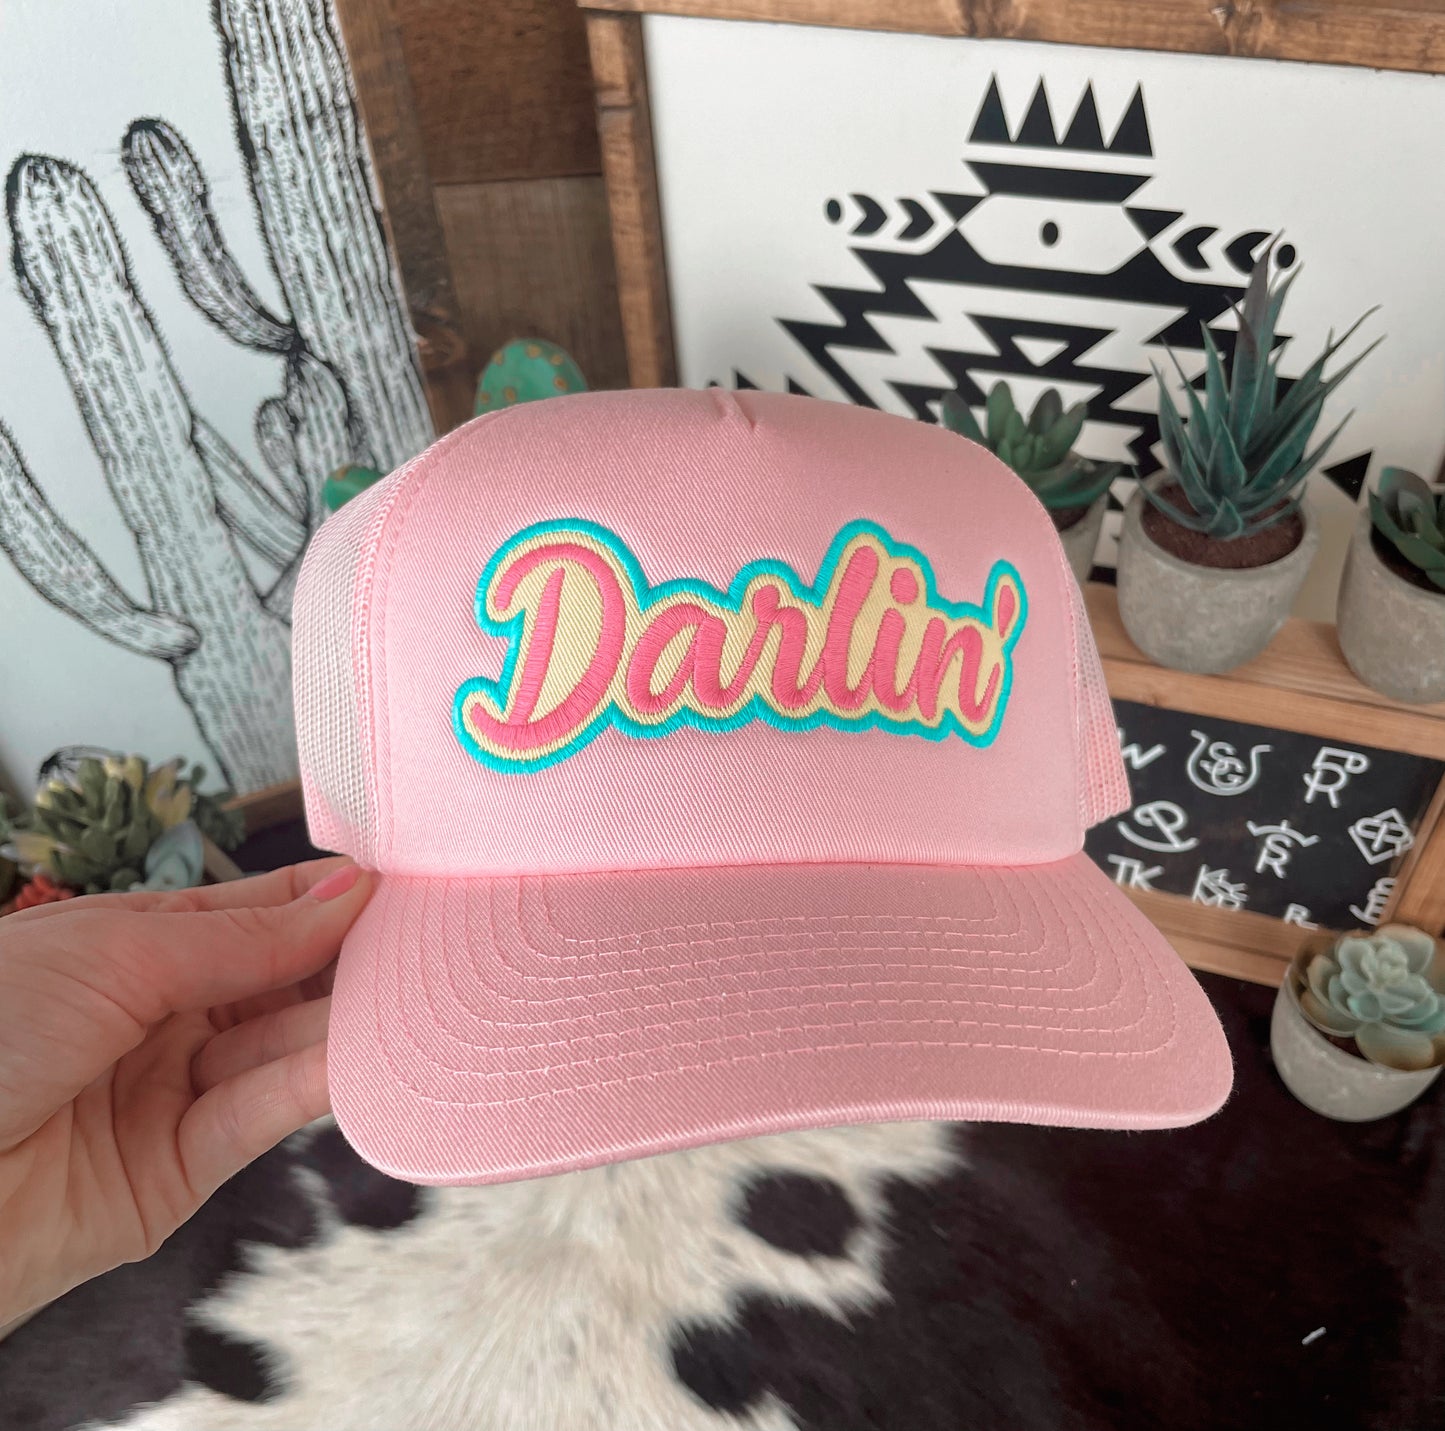 Darlin’ Baseball Cap